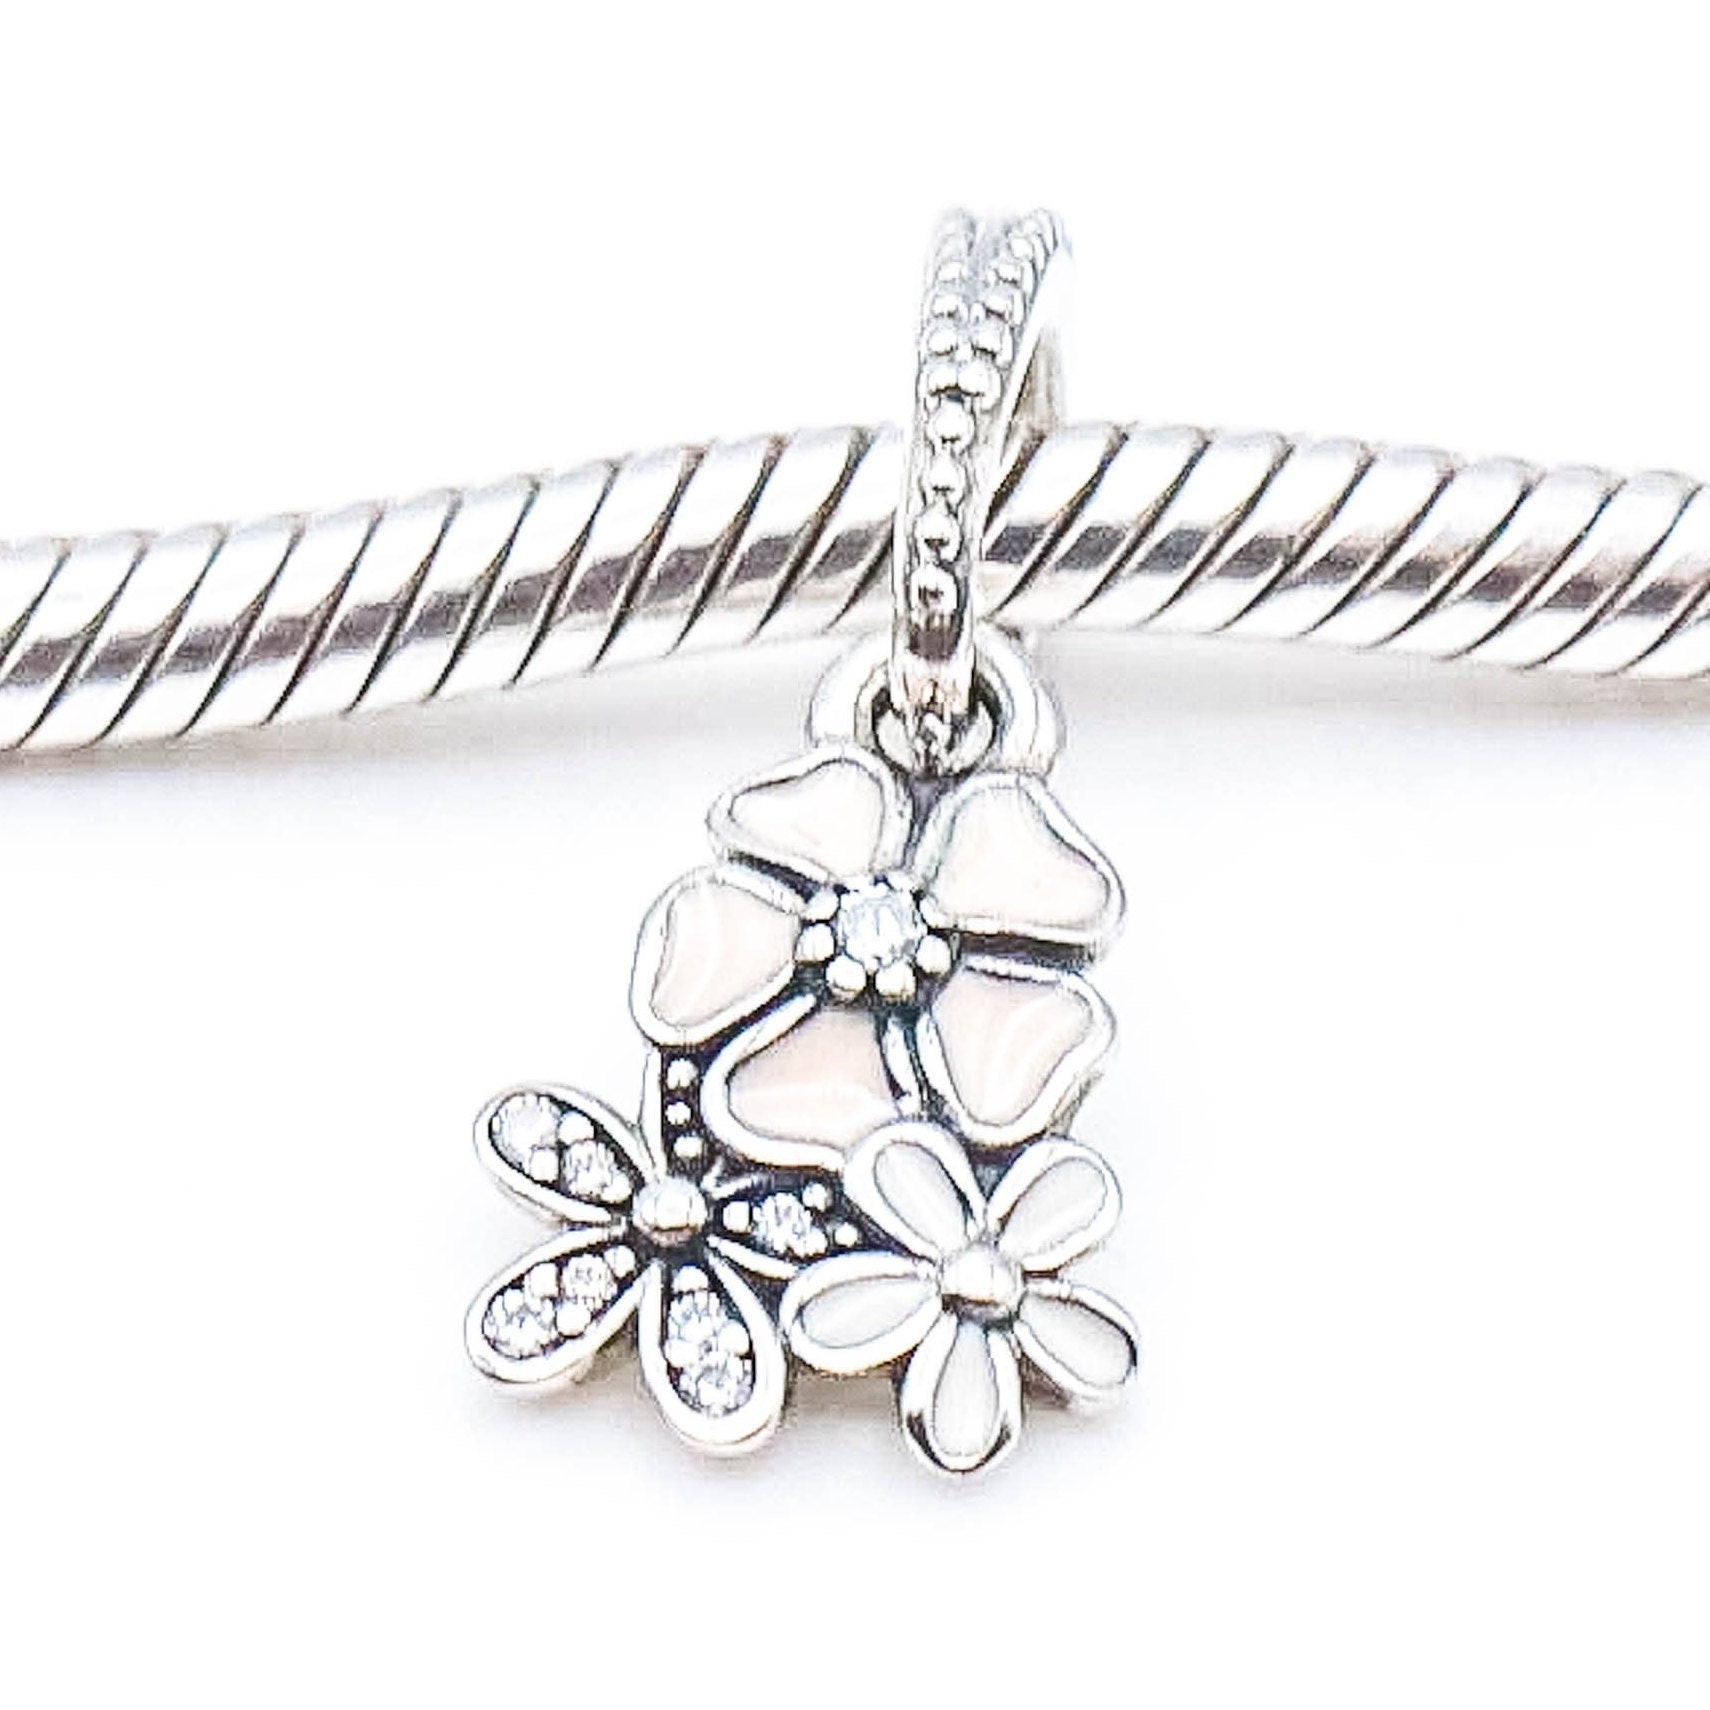 Pandora, Forget Me Not, Flower, Necklace Pendant, Charm 791833acz Uk - Etsy